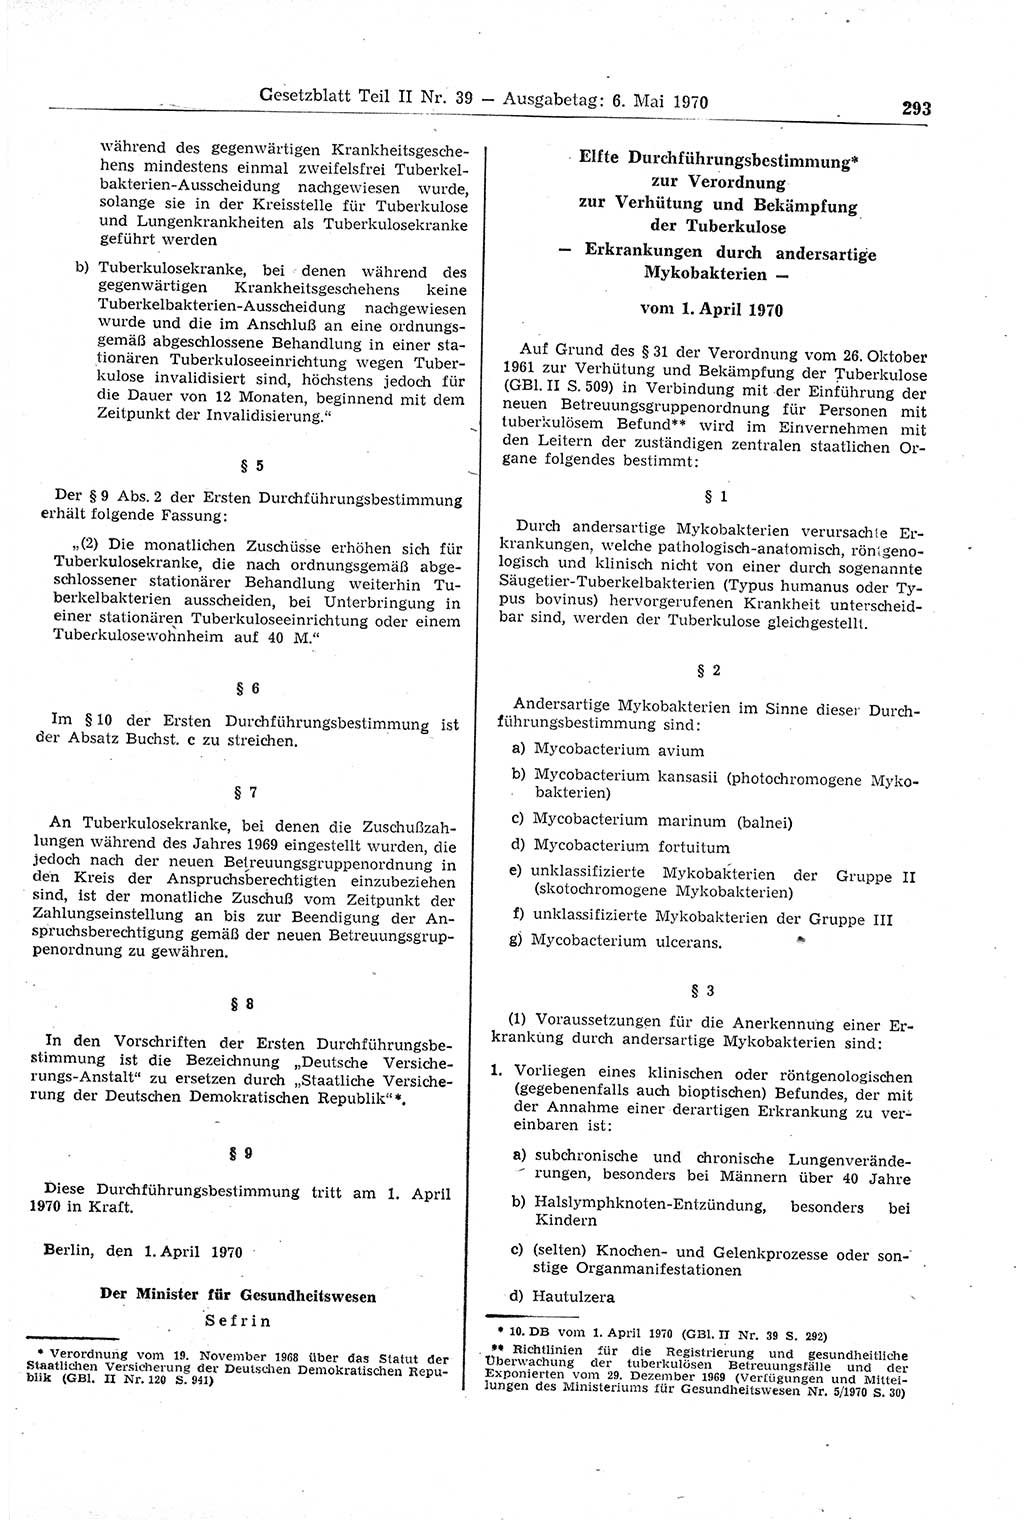 Gesetzblatt (GBl.) der Deutschen Demokratischen Republik (DDR) Teil ⅠⅠ 1970, Seite 293 (GBl. DDR ⅠⅠ 1970, S. 293)